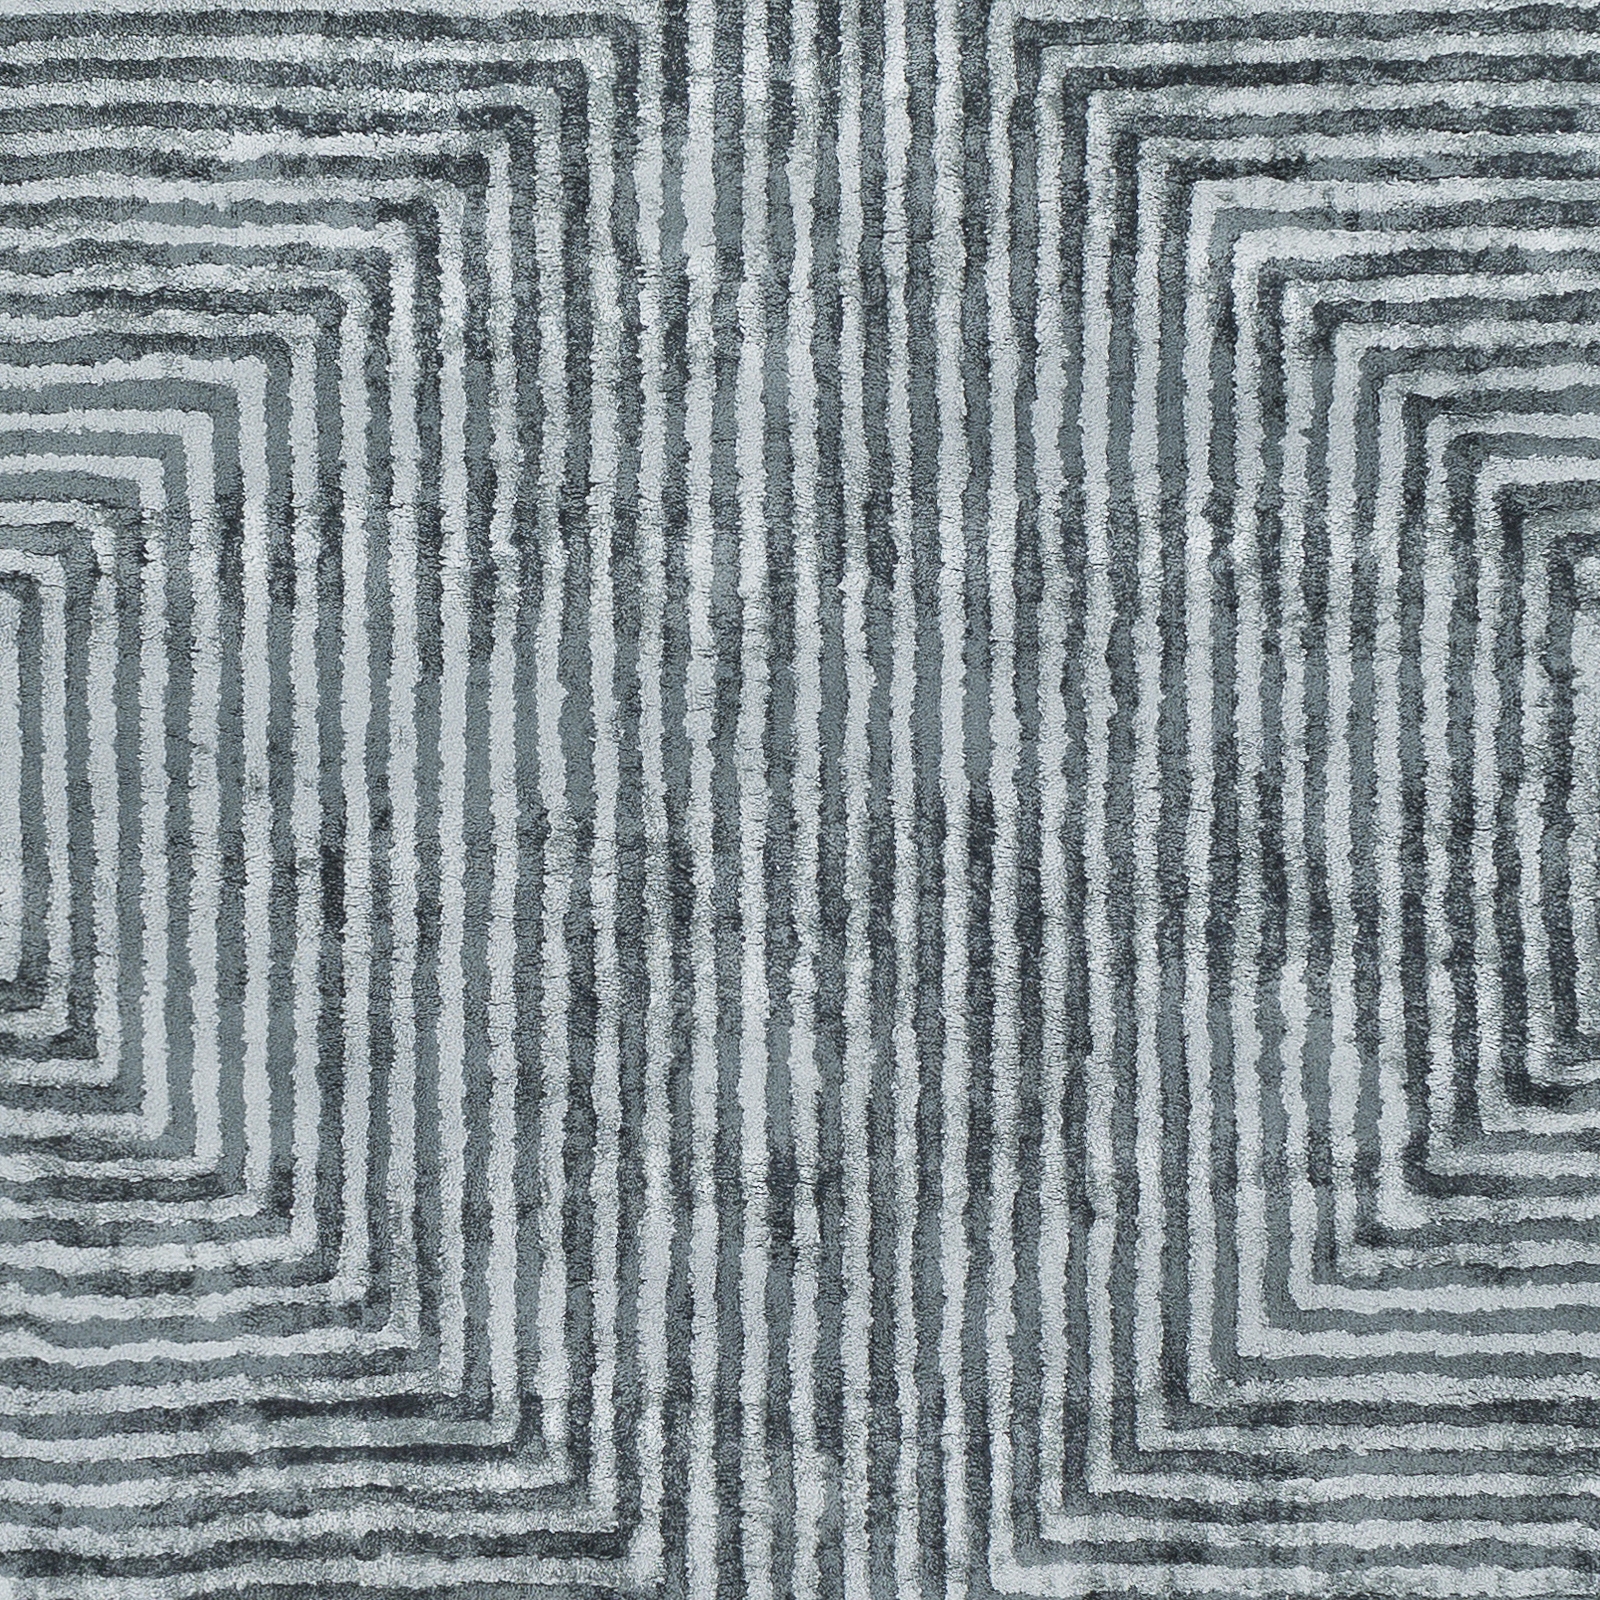 Quartz Rug, 2' x 3' - Image 2